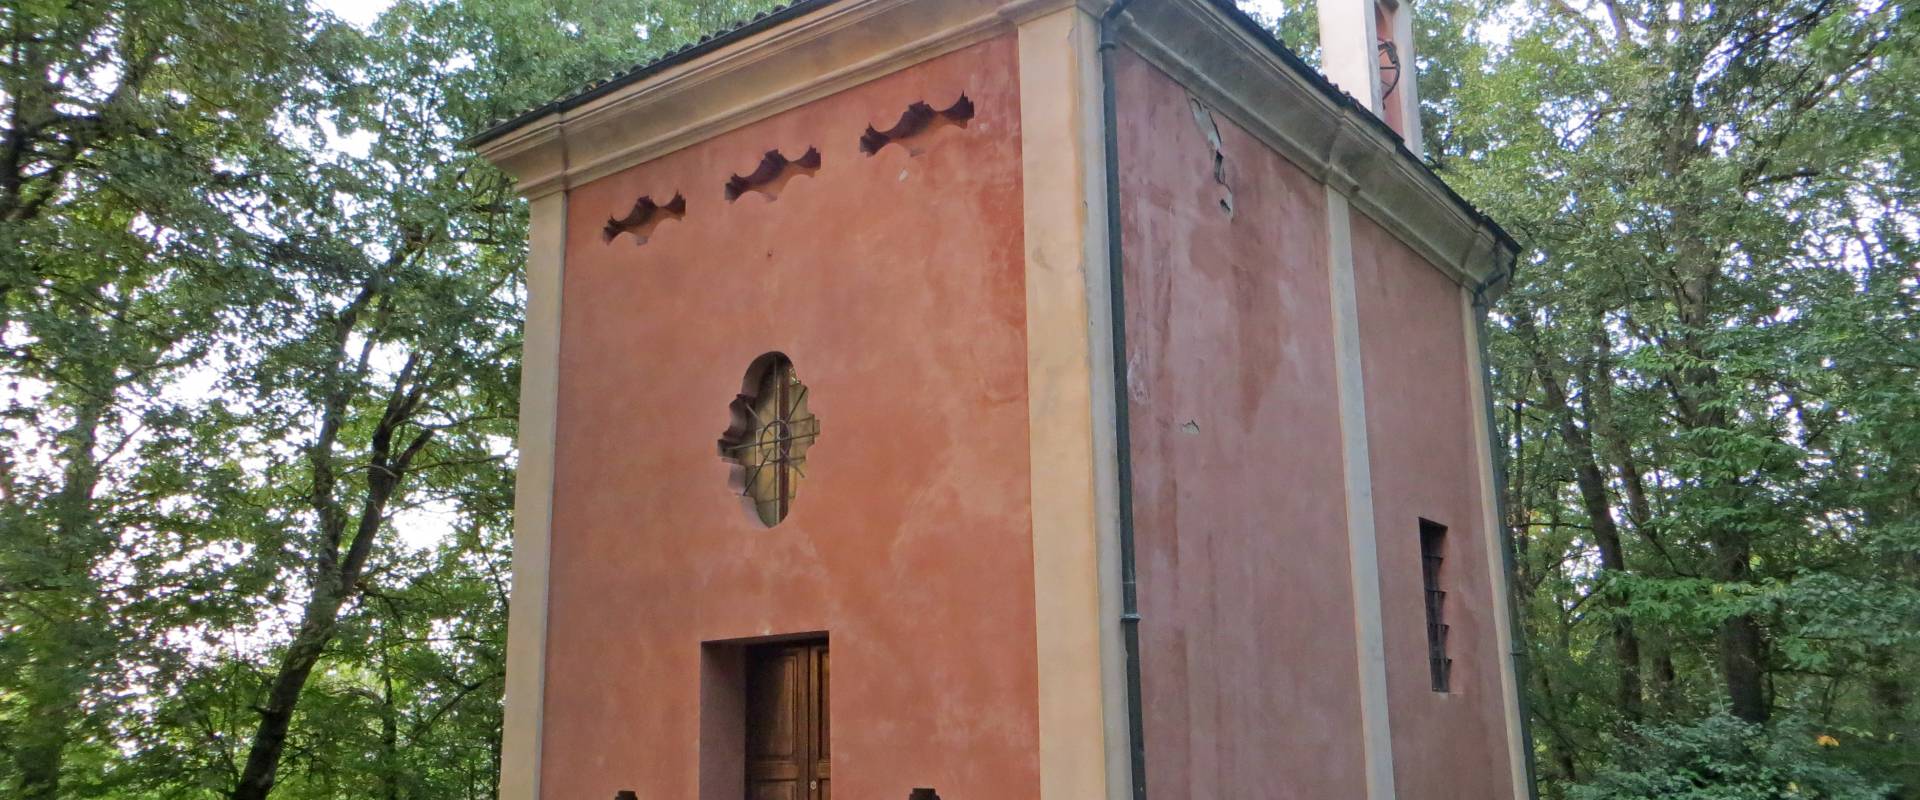 Oratorio della Beata Vergine (Castellaro, Sala Baganza) - facciata e lato est 1 2019-09-16 photo by Parma198